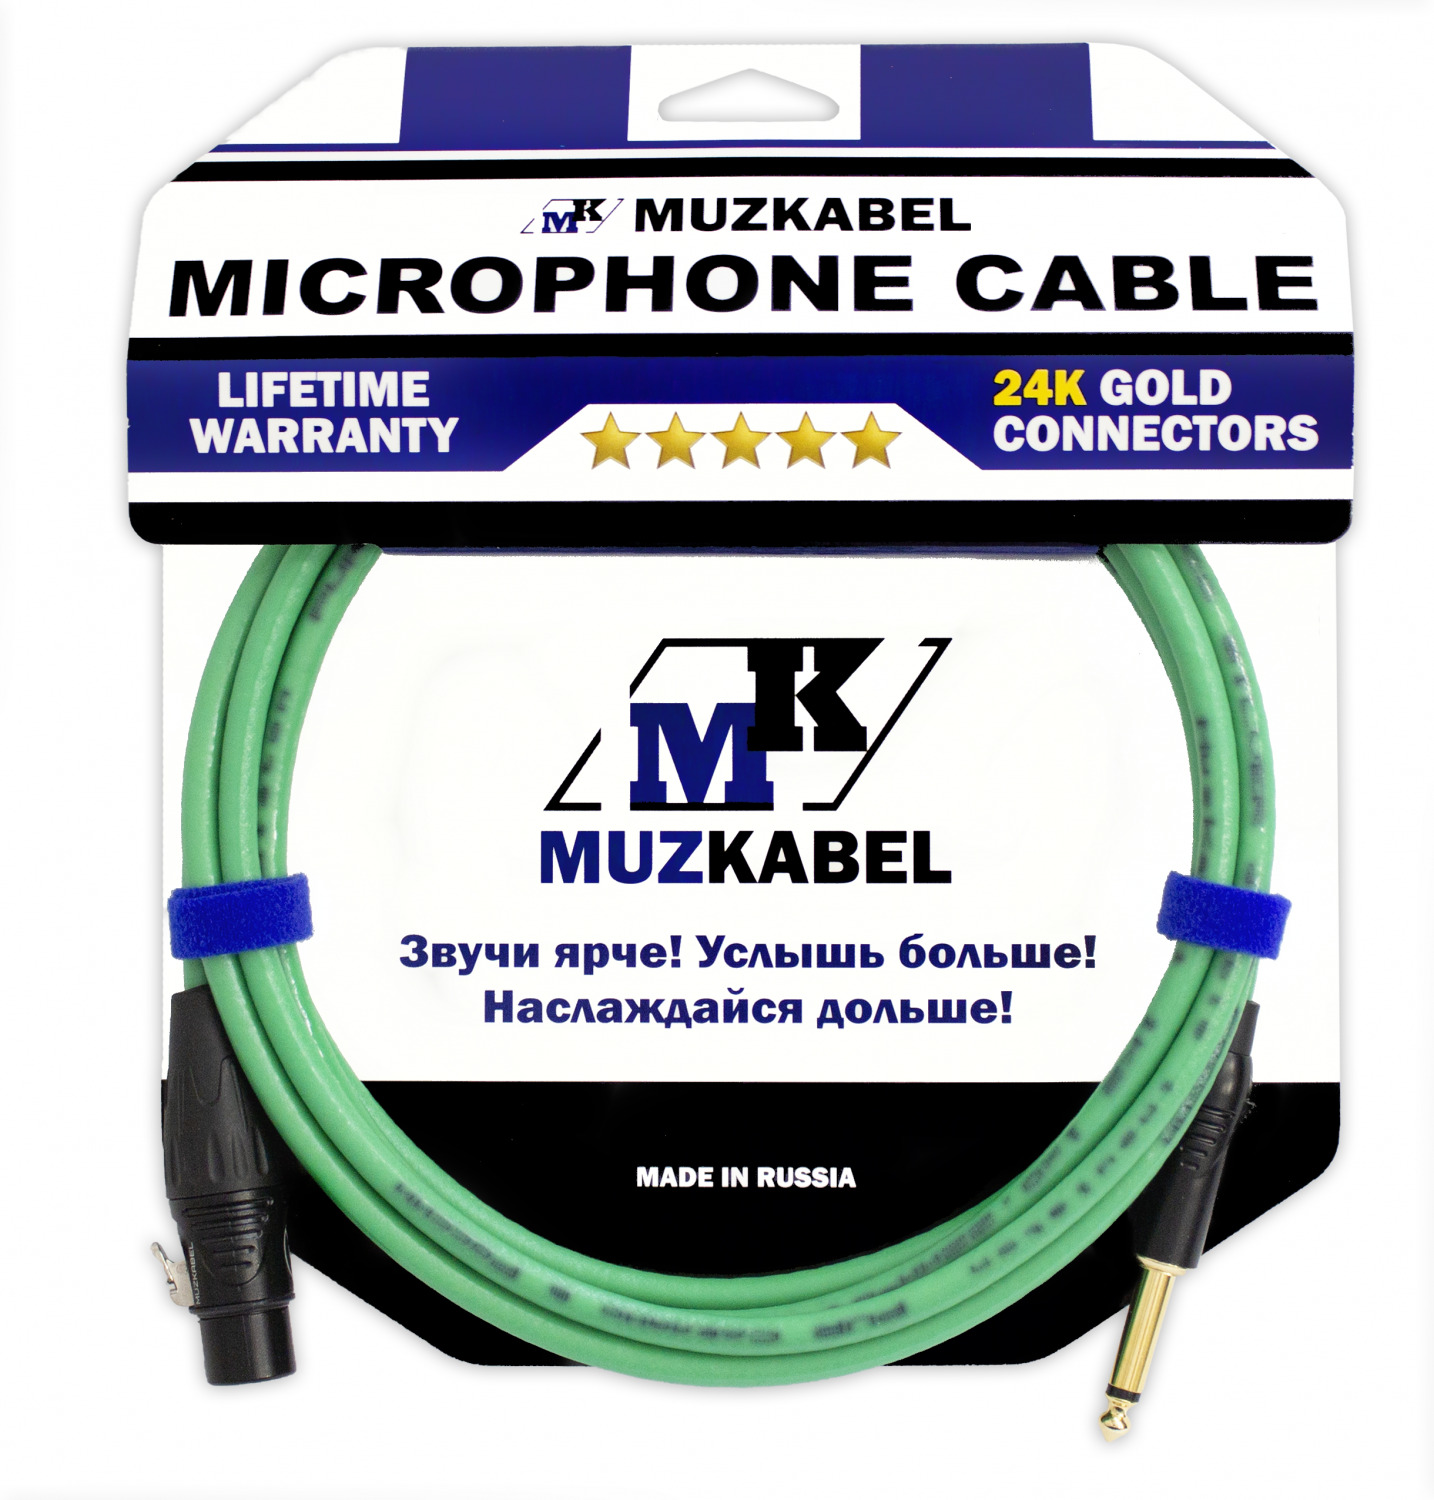 Микрофонный кабель MUZKABEL IIKXGM2 - 6 метров, XLR (МАМА) - JACK